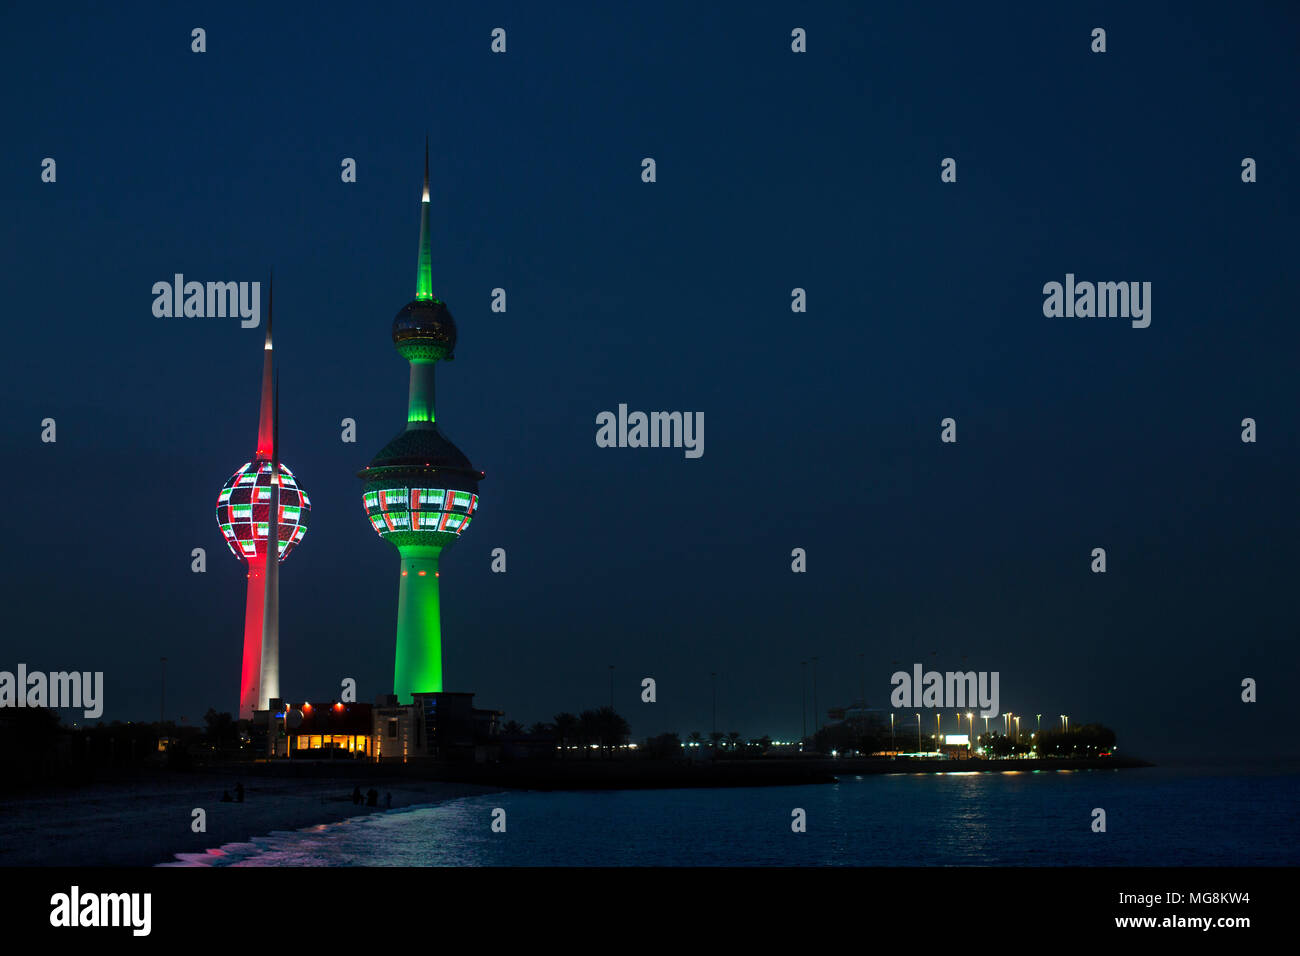 Kuwait towers lit up at night with the Kuwaiti colours. Kuwait City, Kuwait Stock Photo